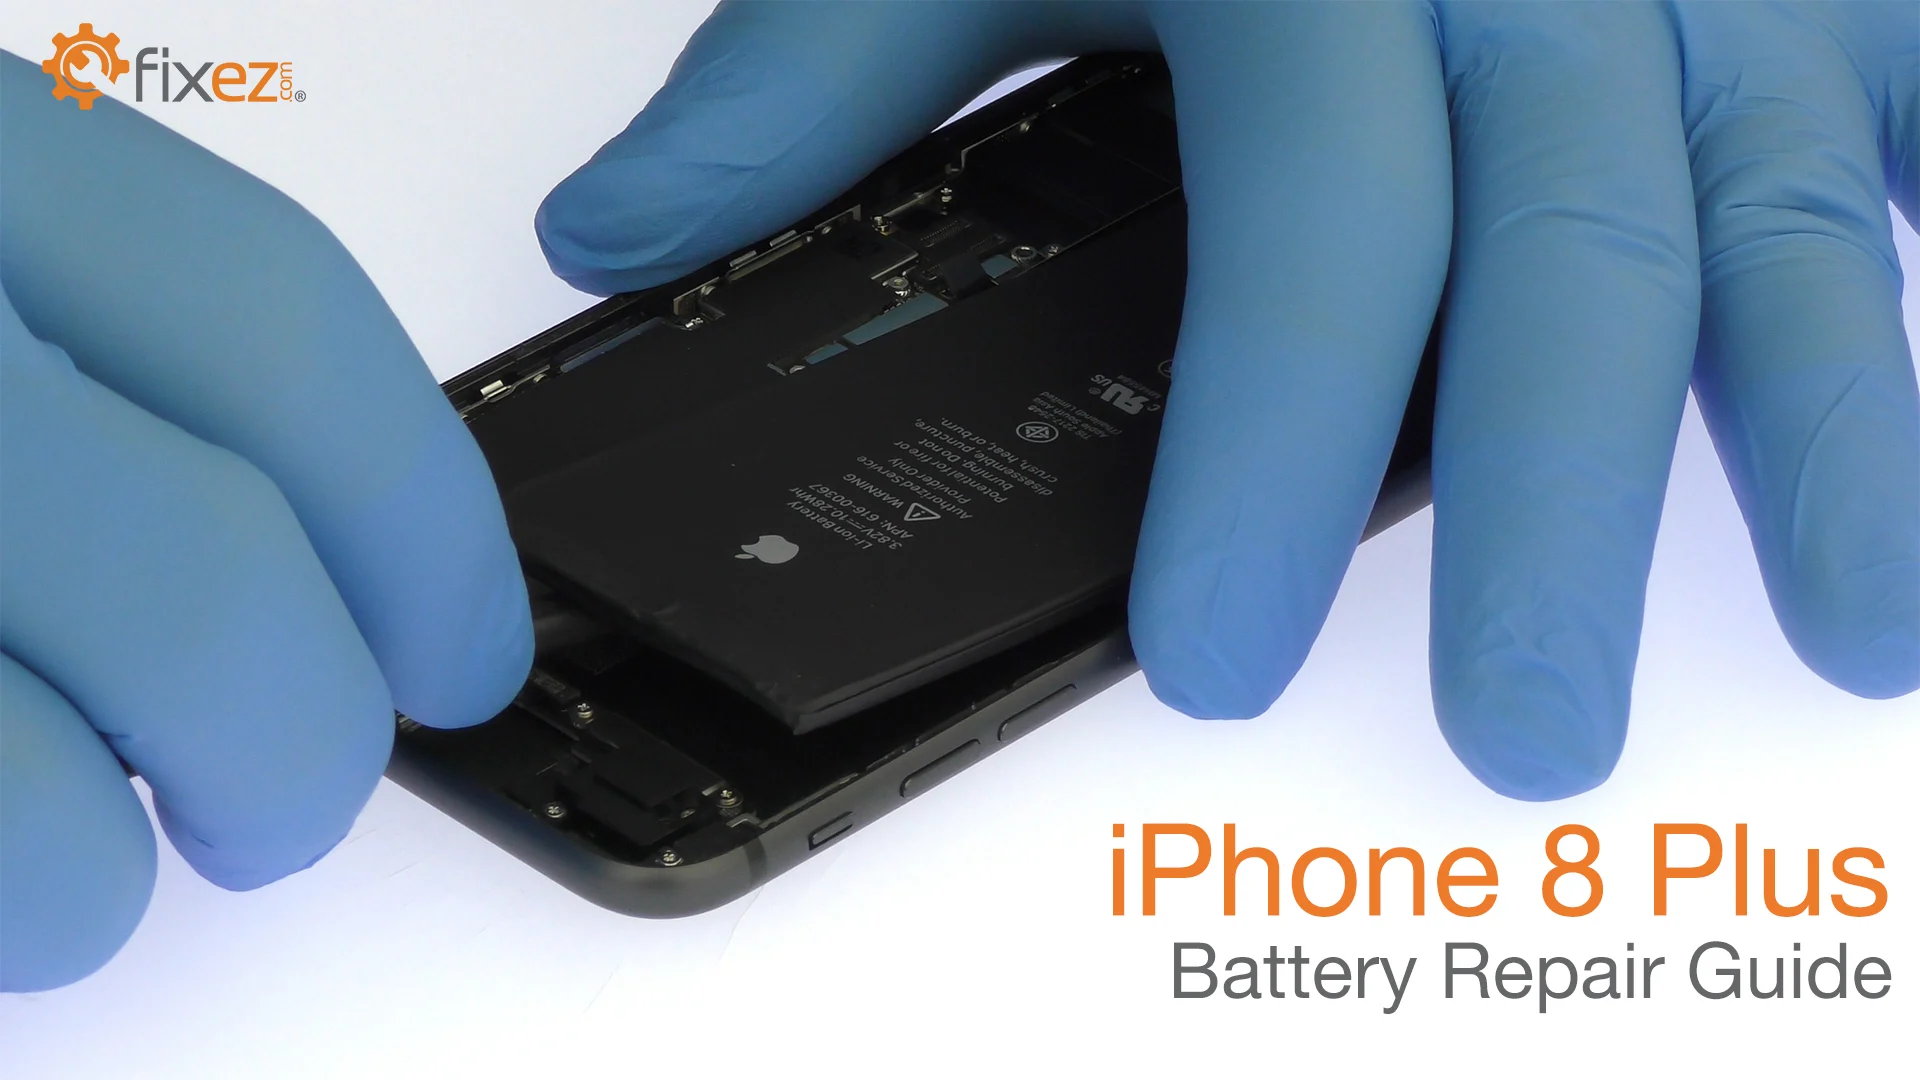 iPhone 8 Plus Battery Repair Guide